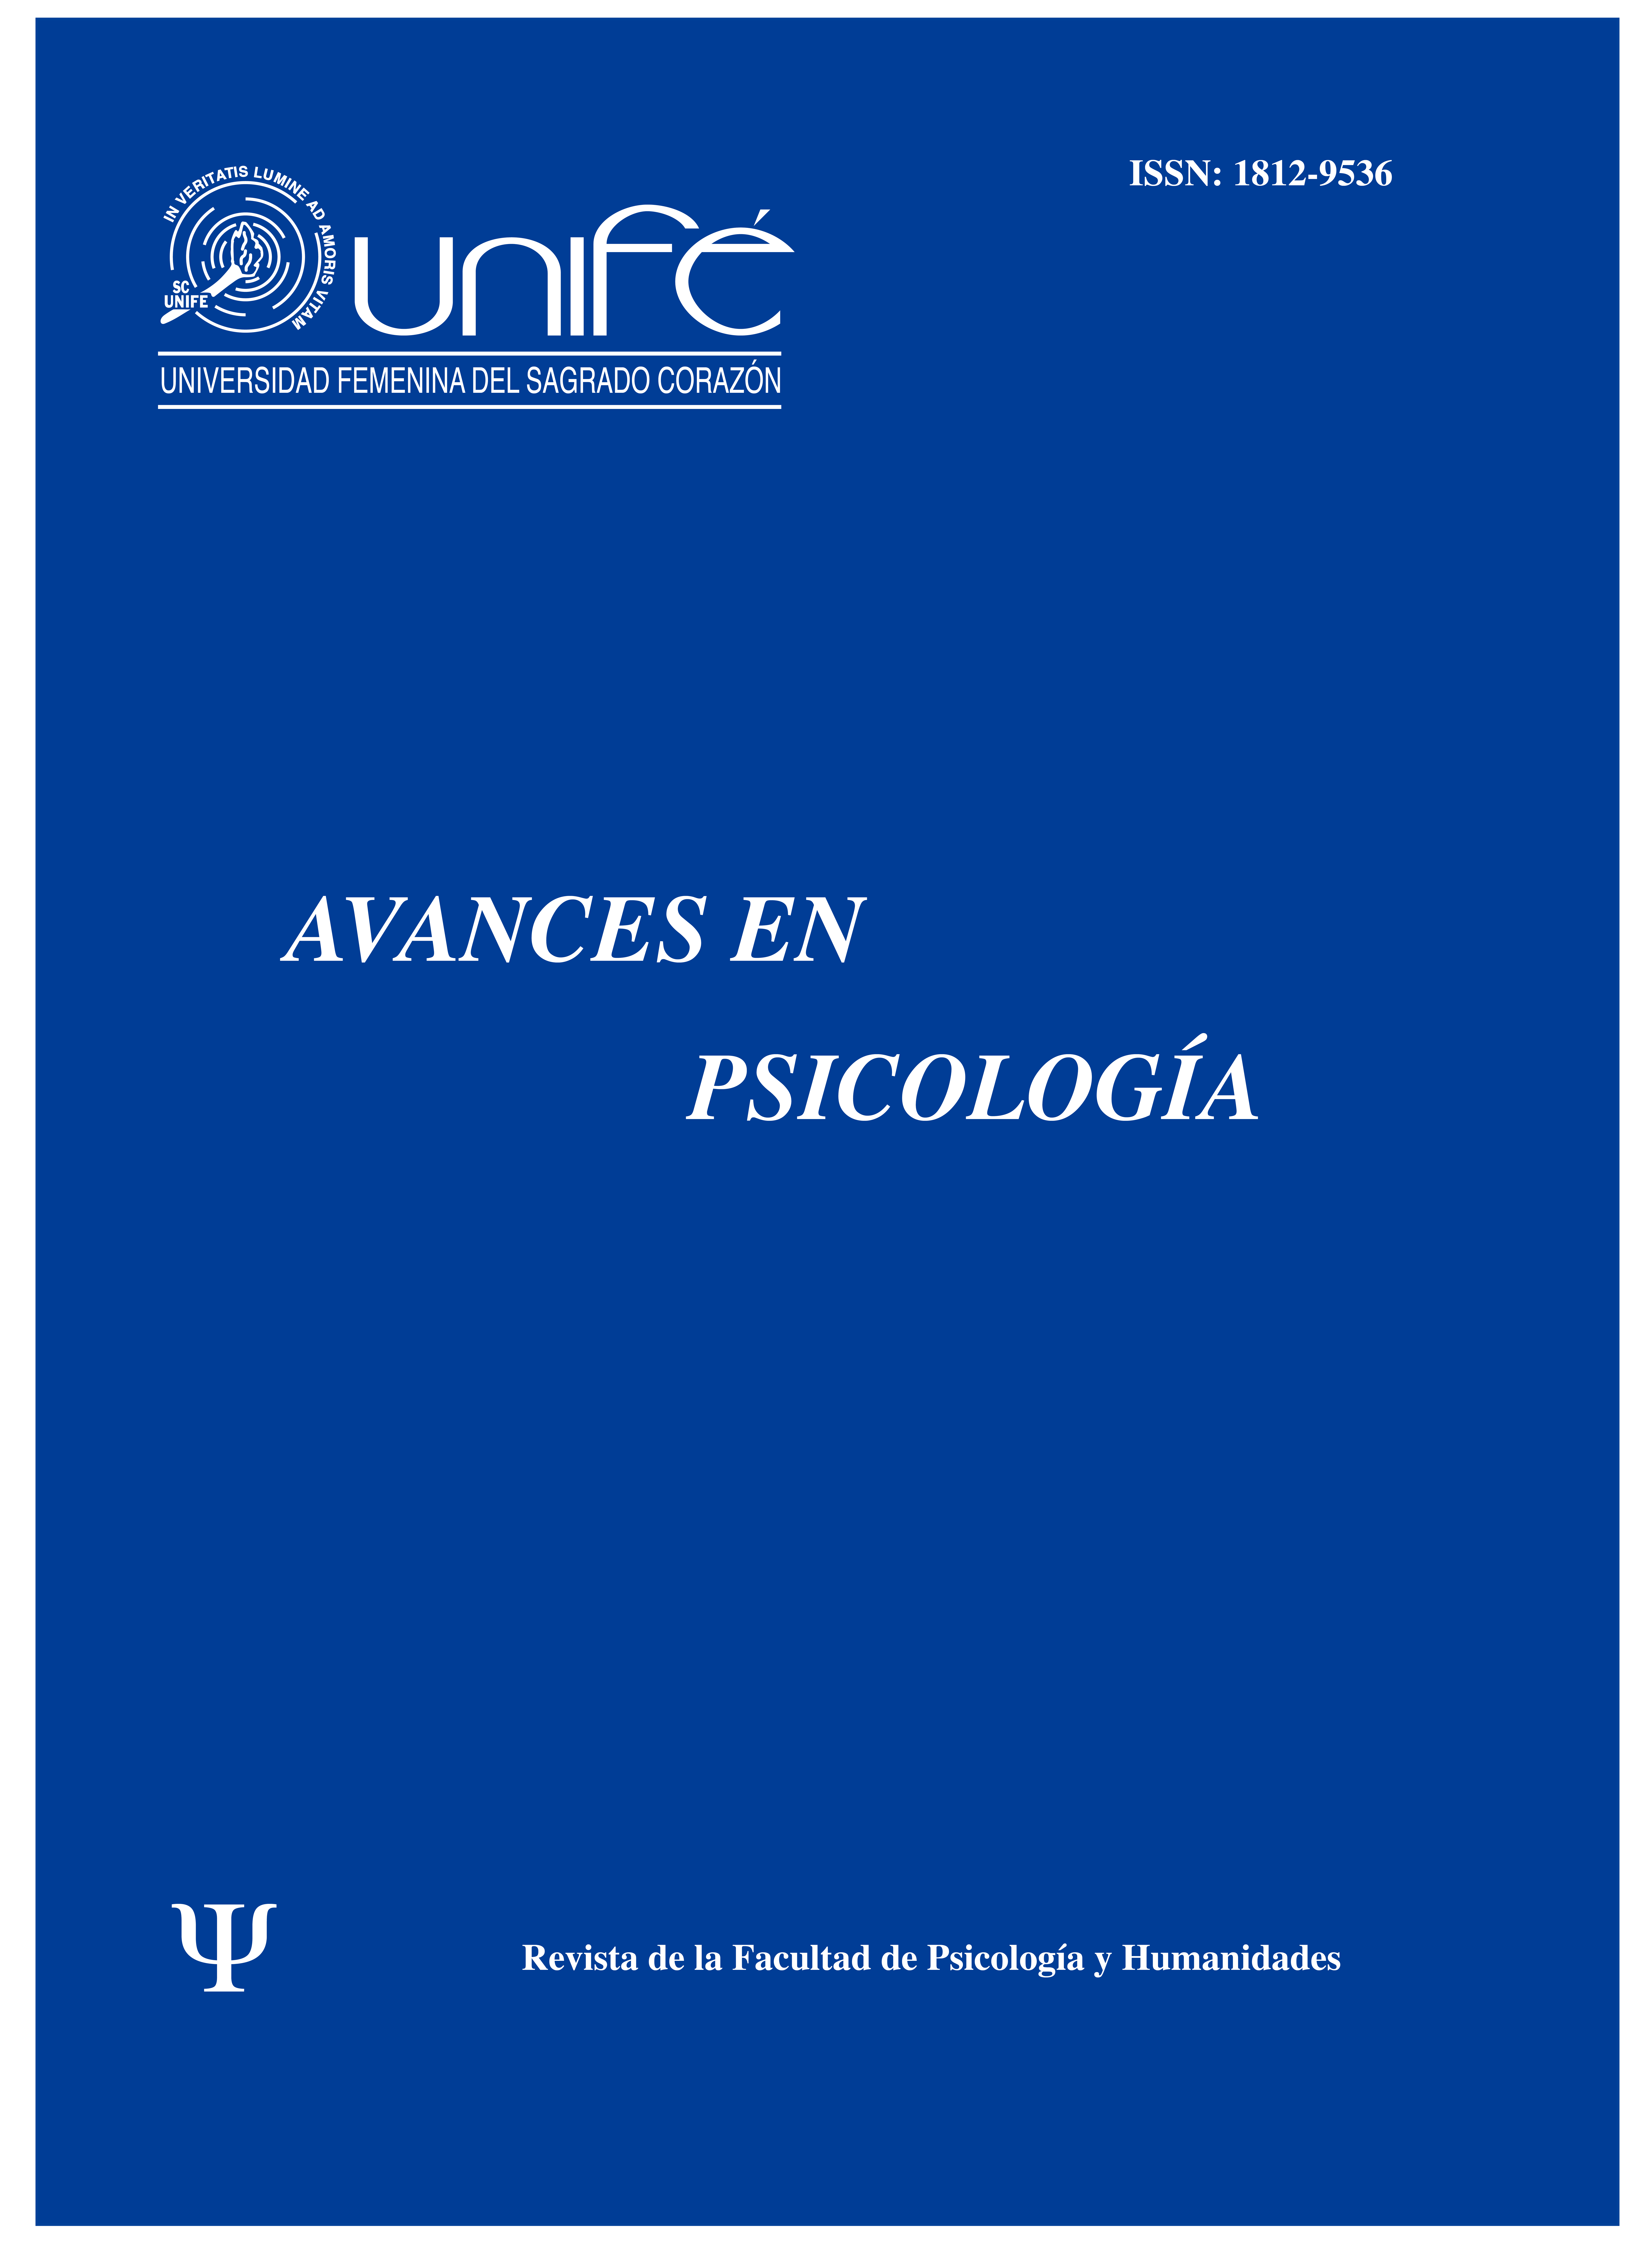 					Ver Vol. 25 Núm. 2 (2017): Avances en Psicología: Revista de la Facultad de Psicología y Humanidades
				